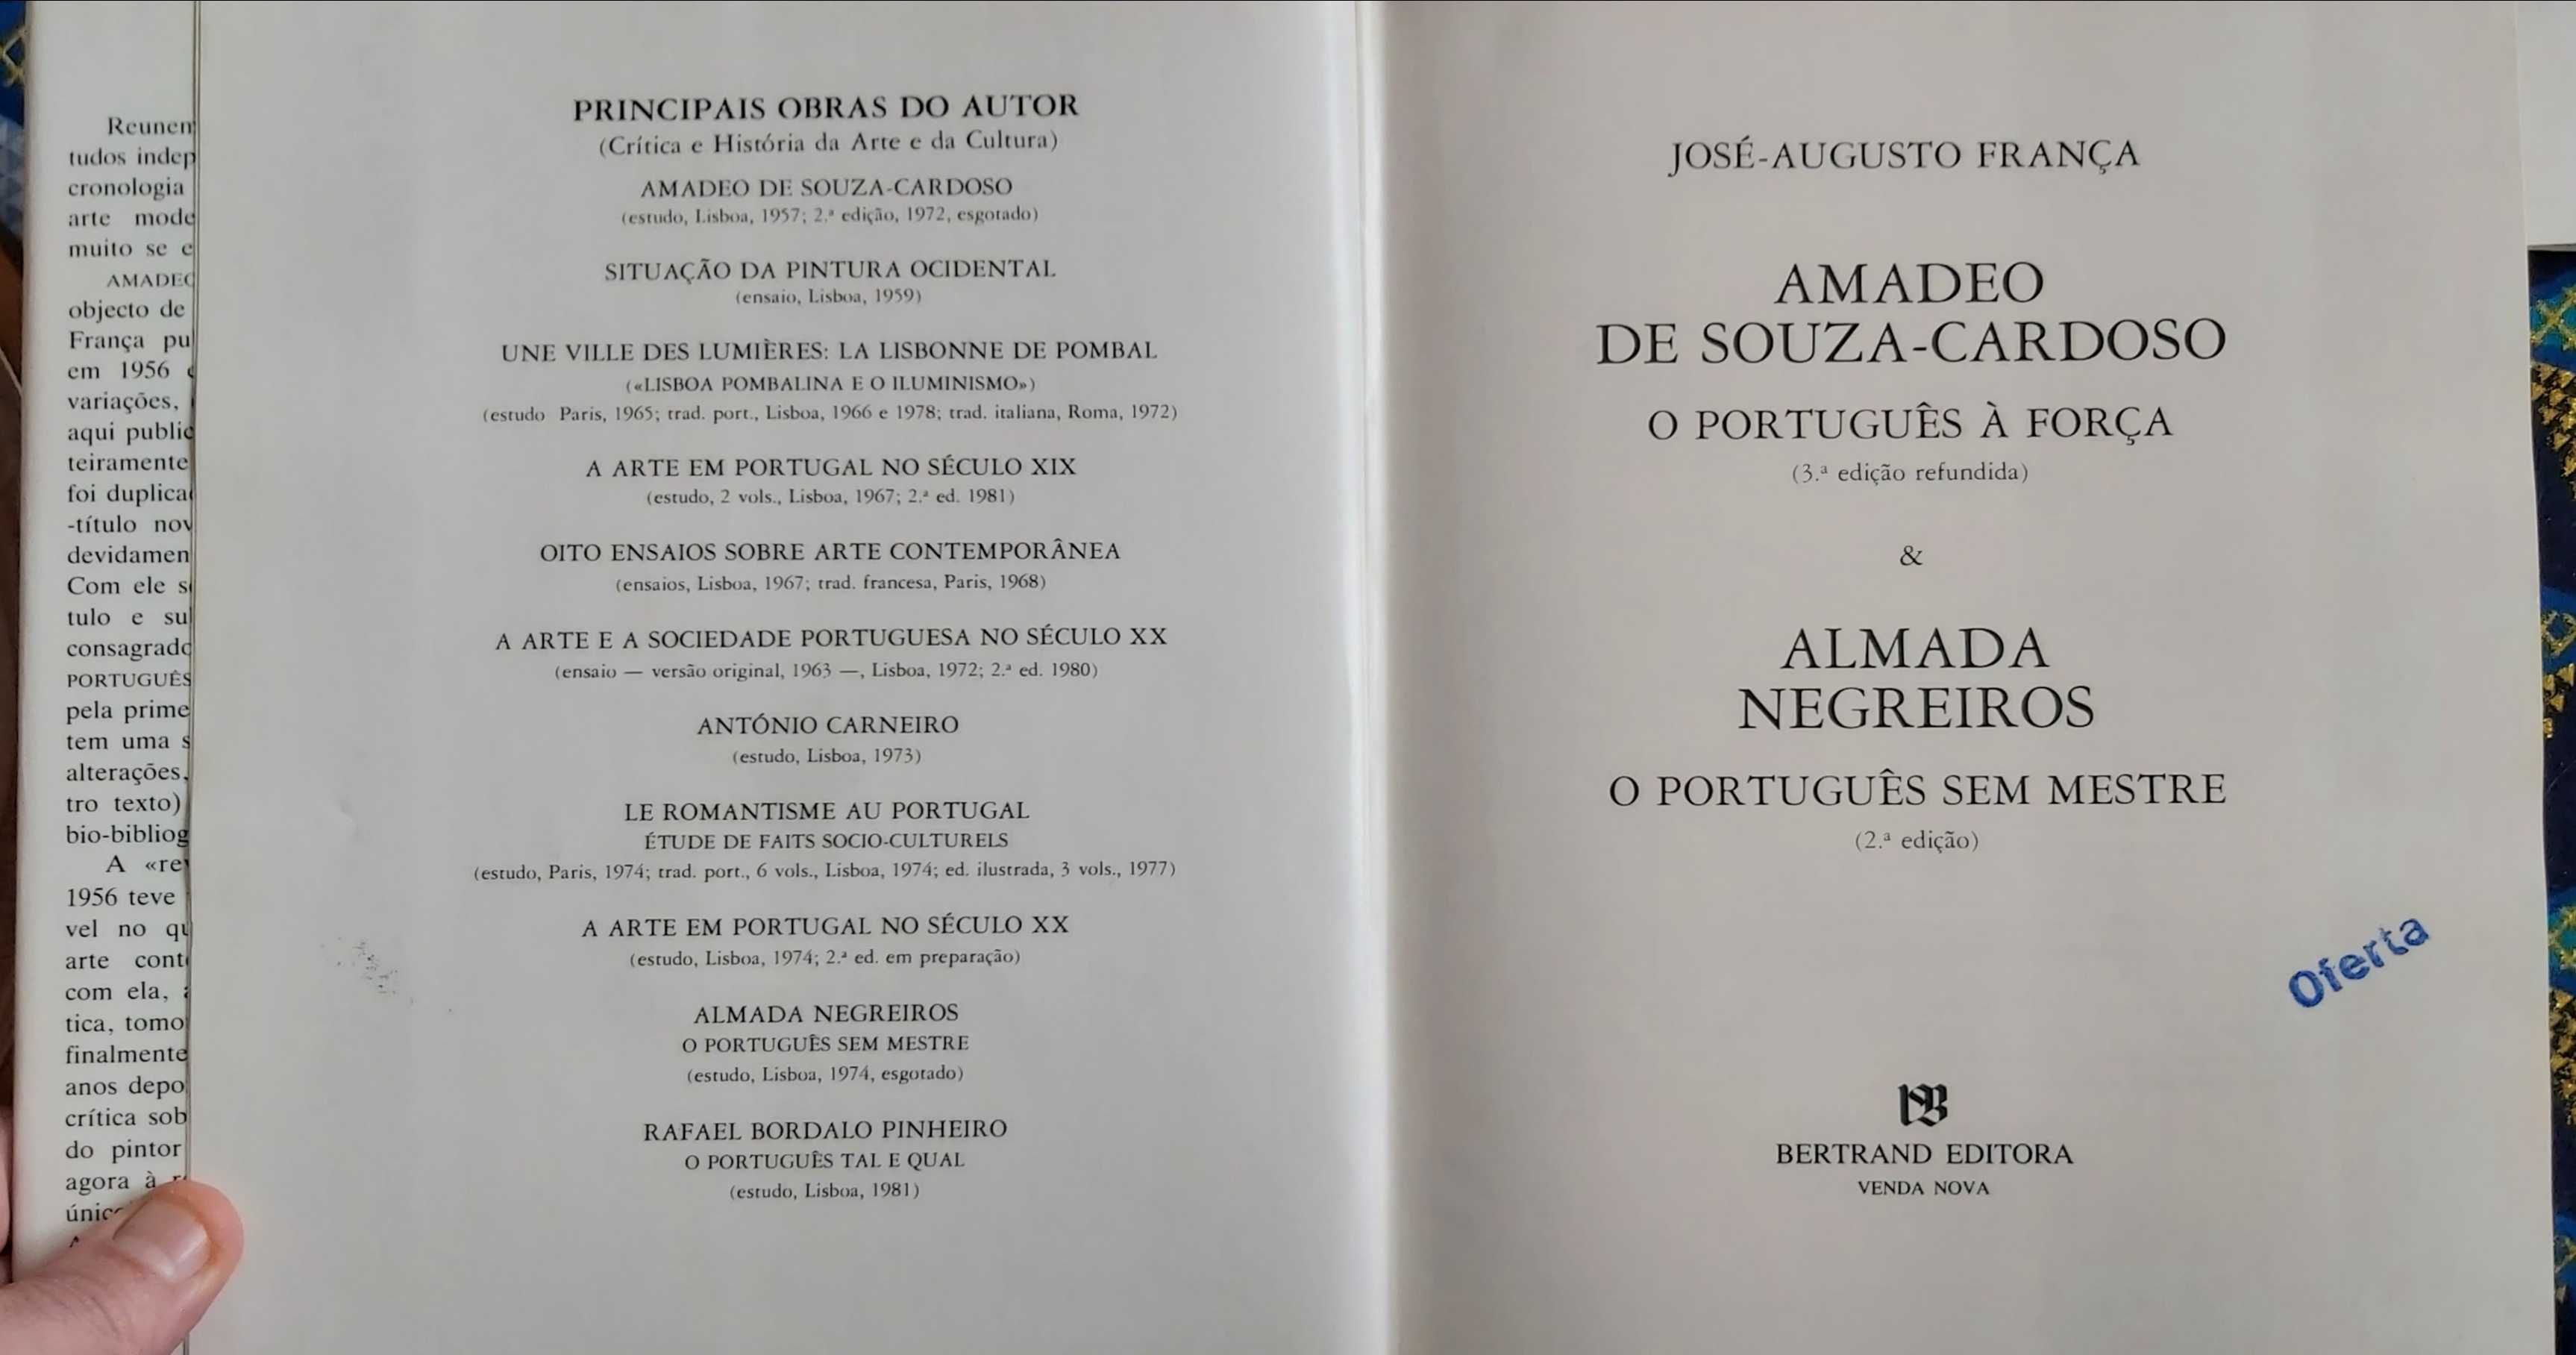 José Augusto França - Amadeo & Almada